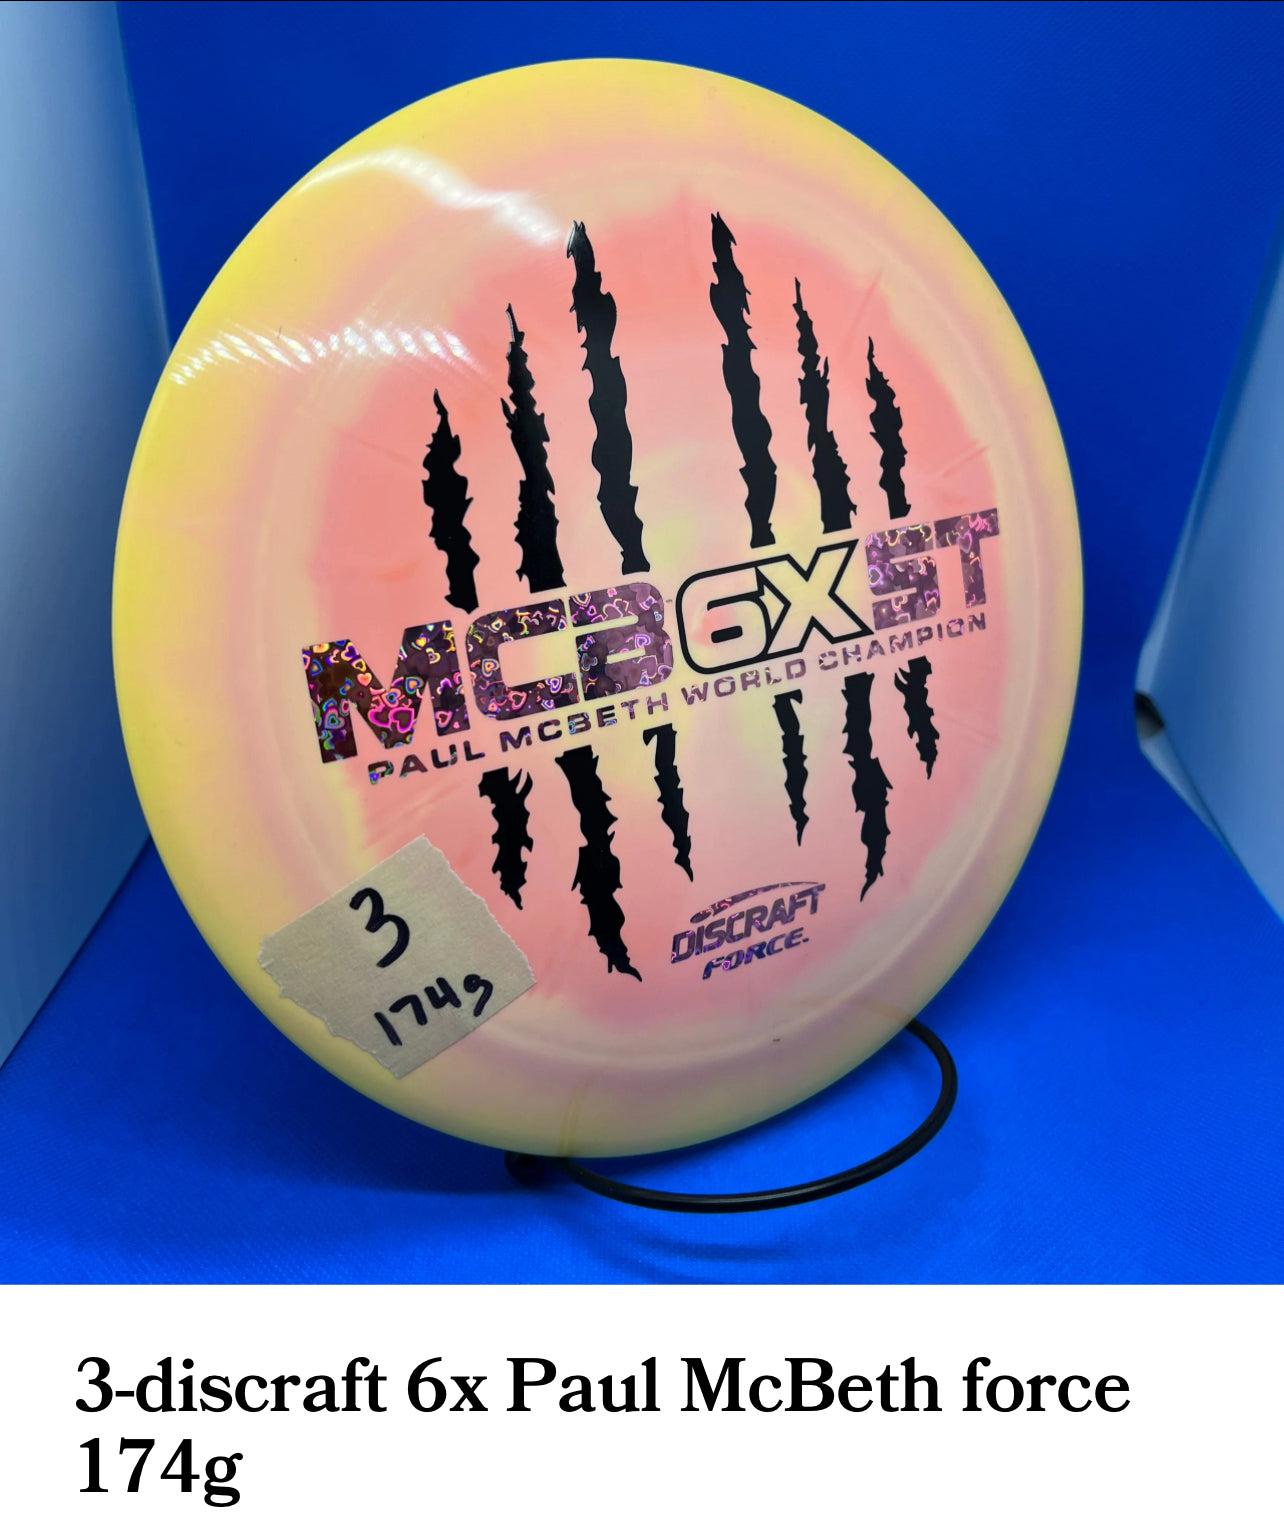 Discraft 6x Paul McBeth forces